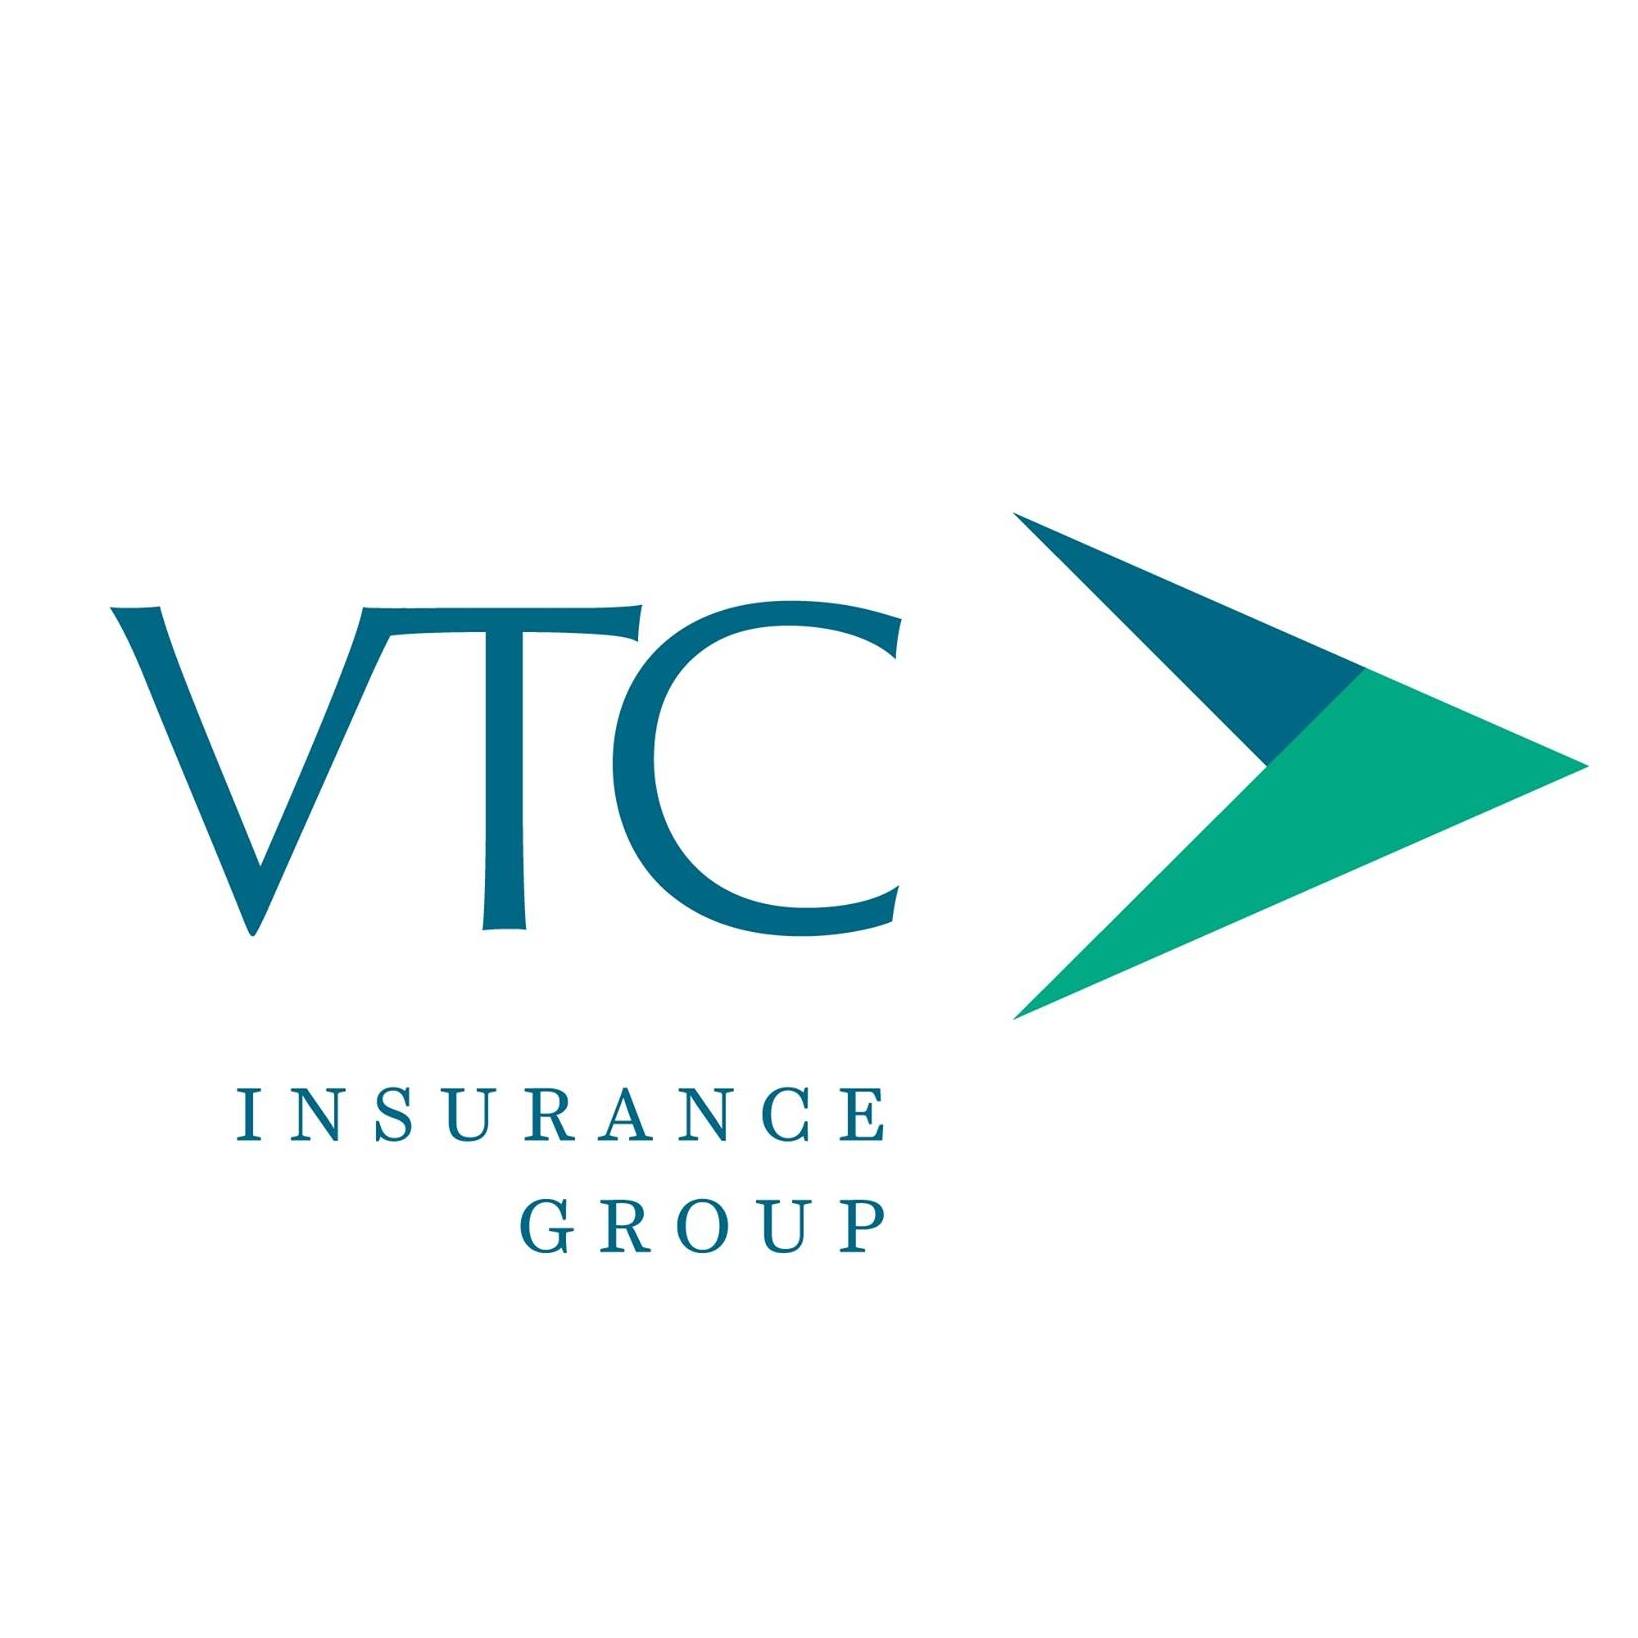 VTC Insurance Group